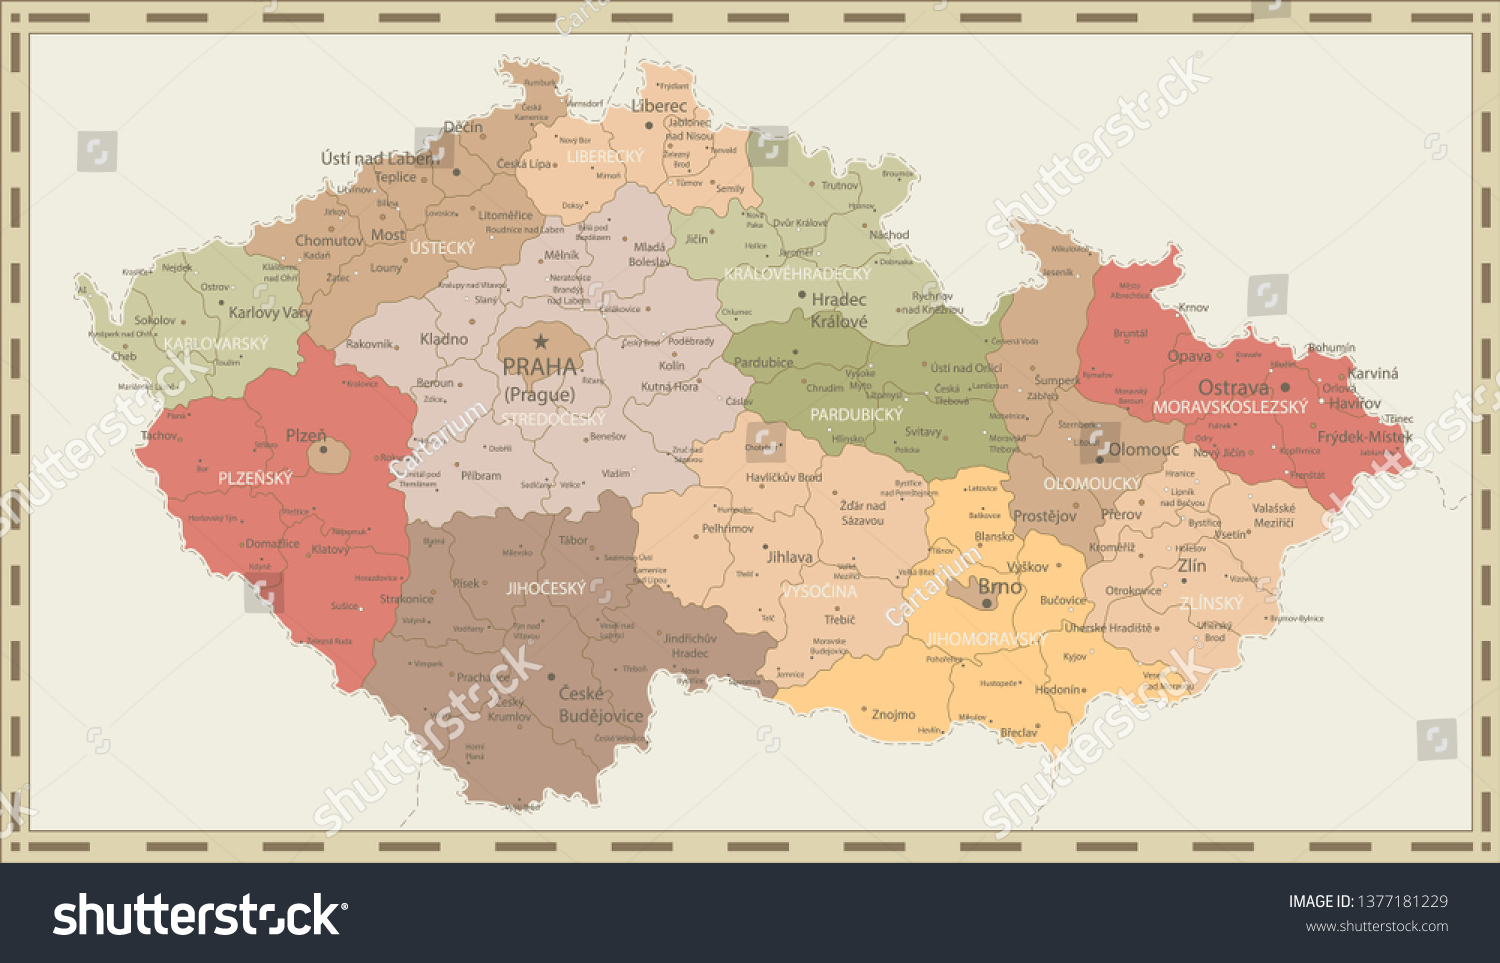 Stock Vector Czech Republic Political Map Retro Colors Detailed Map Of Czech Republic Vector Illustration 1377181229 